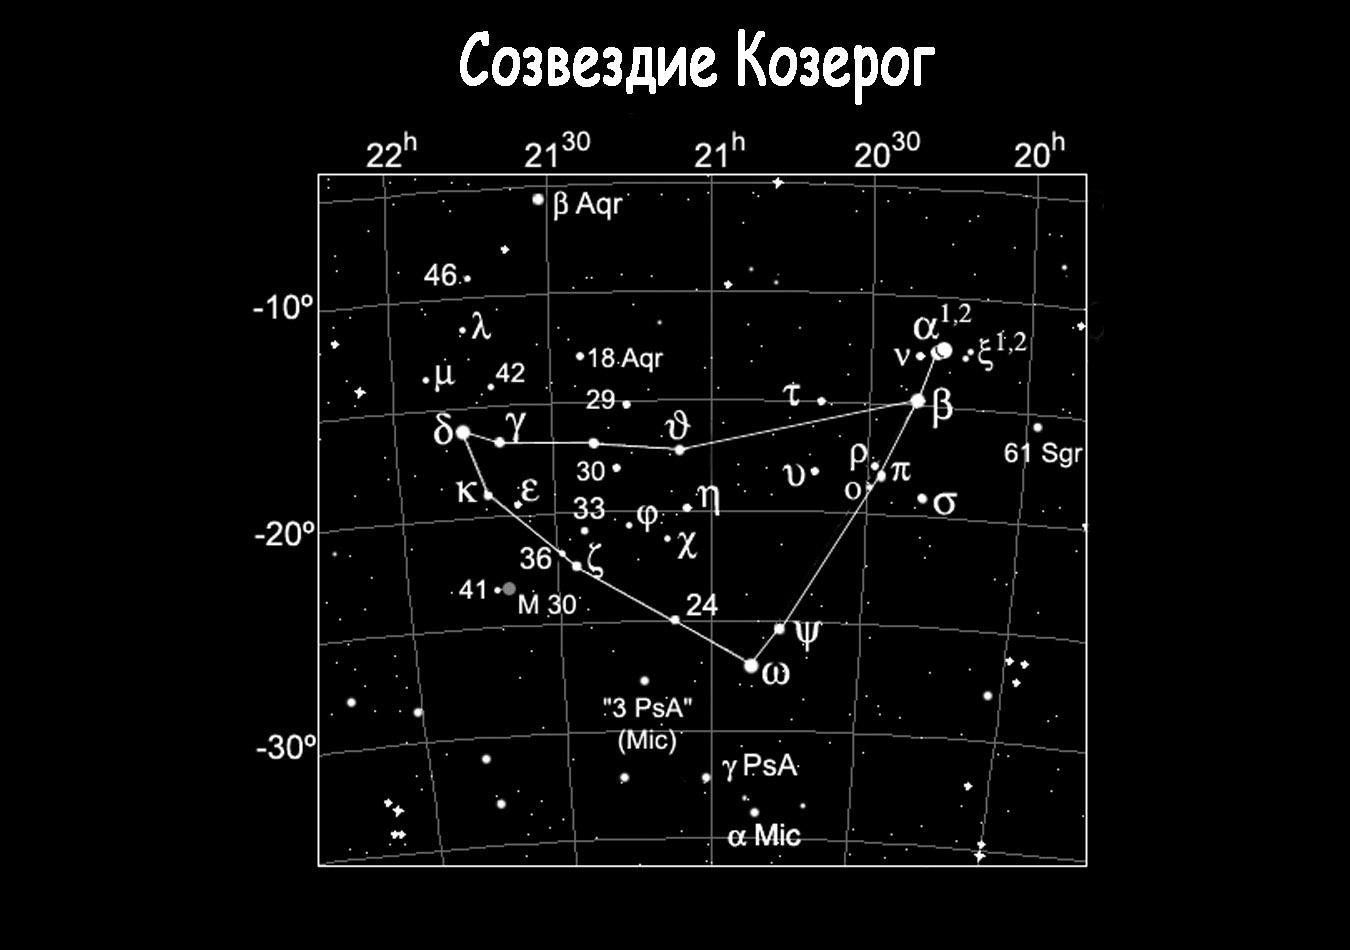 Зодиакальное созвездие Козерог